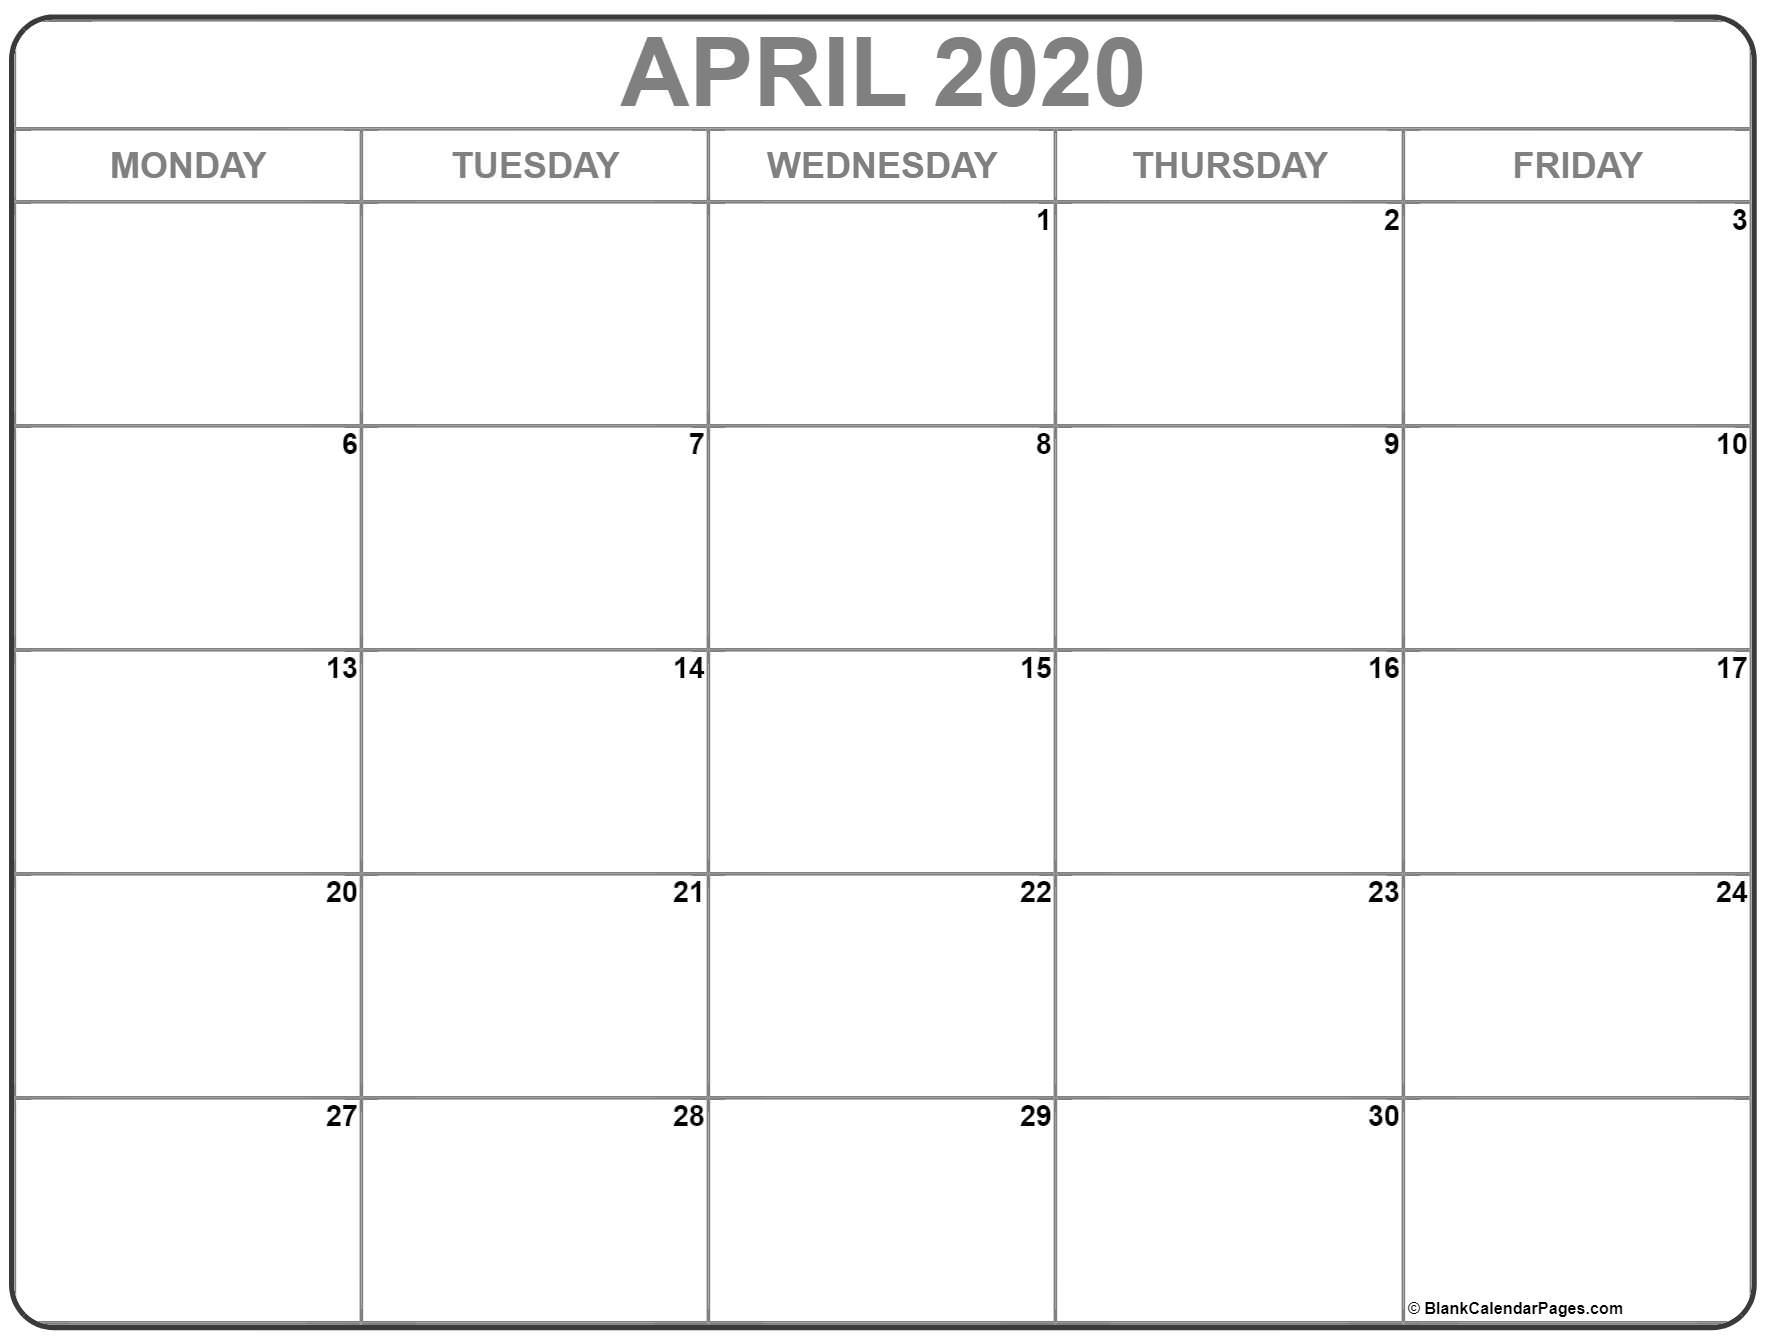 April 2020 Monday Calendar | Monday To Sunday